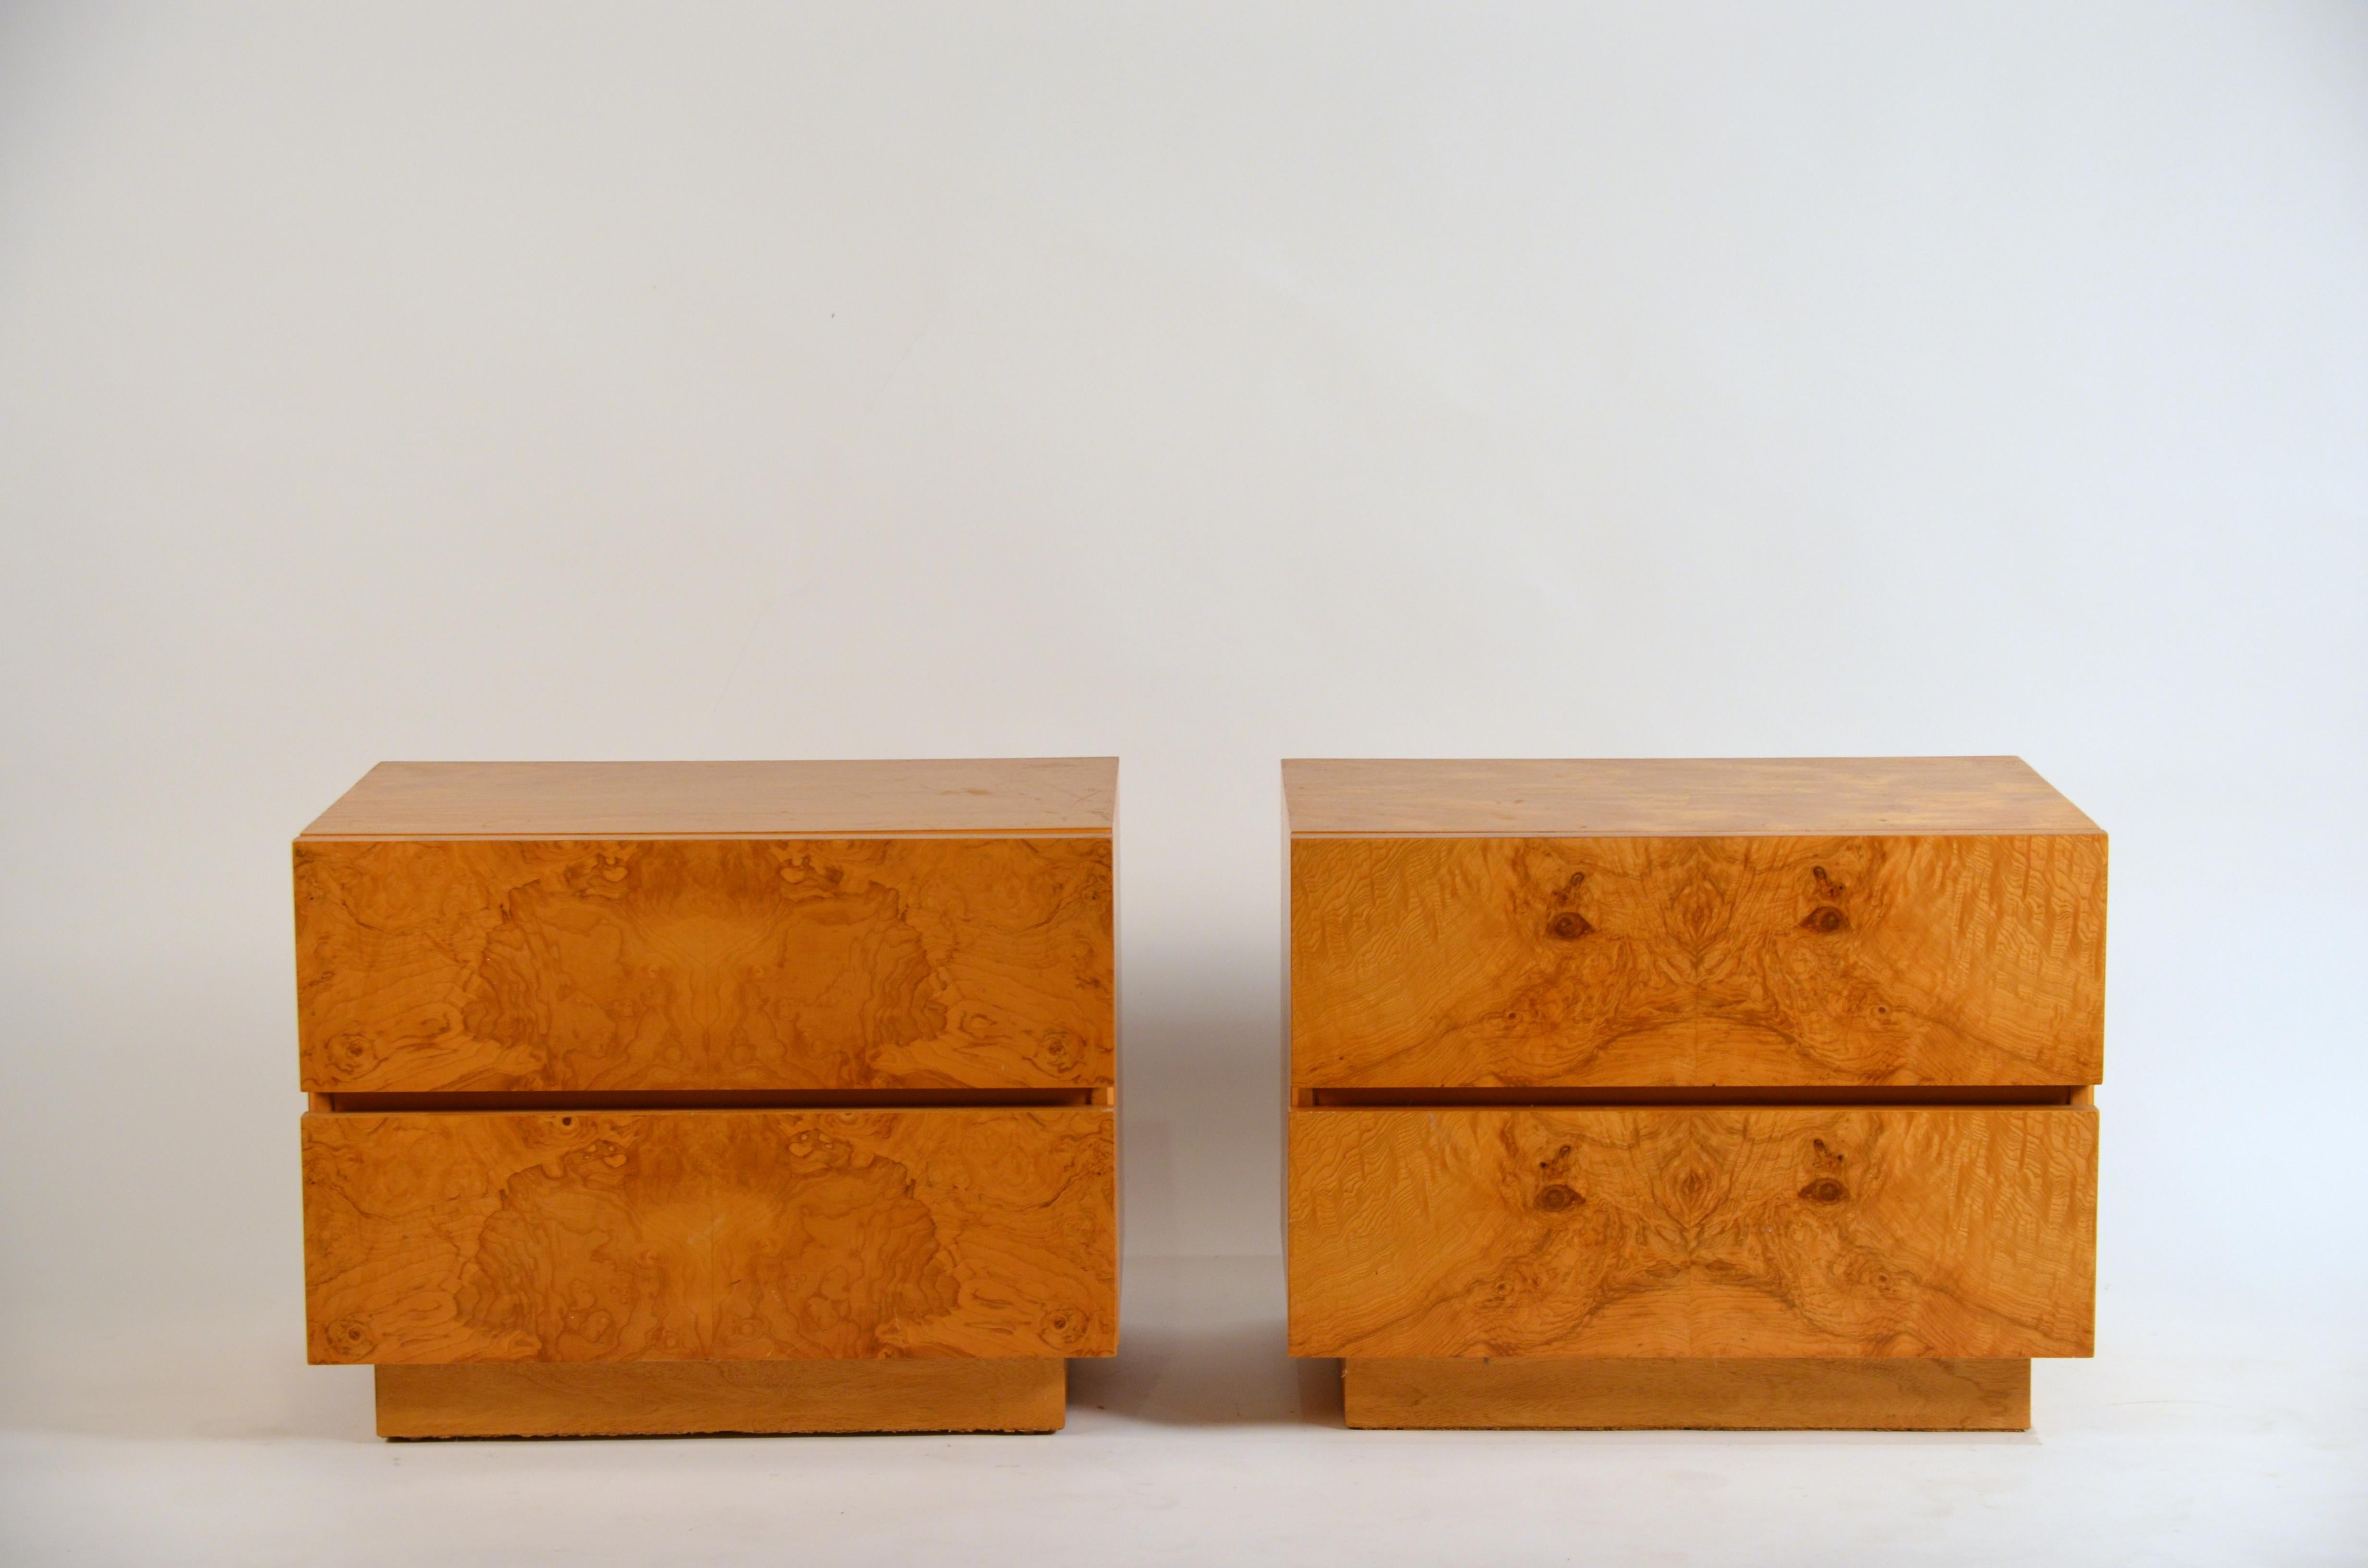 Ein Paar minimalistische Nachttische aus Wurzelholz 'Amboine' von Design Frères.

Einfaches, funktionelles Design mit 2 tiefen Schubladen pro Nachttisch. Tolle Rorschach-Muster auf den Schubladenfronten.

Das Schlafzimmerbild zeigt ein ähnlich